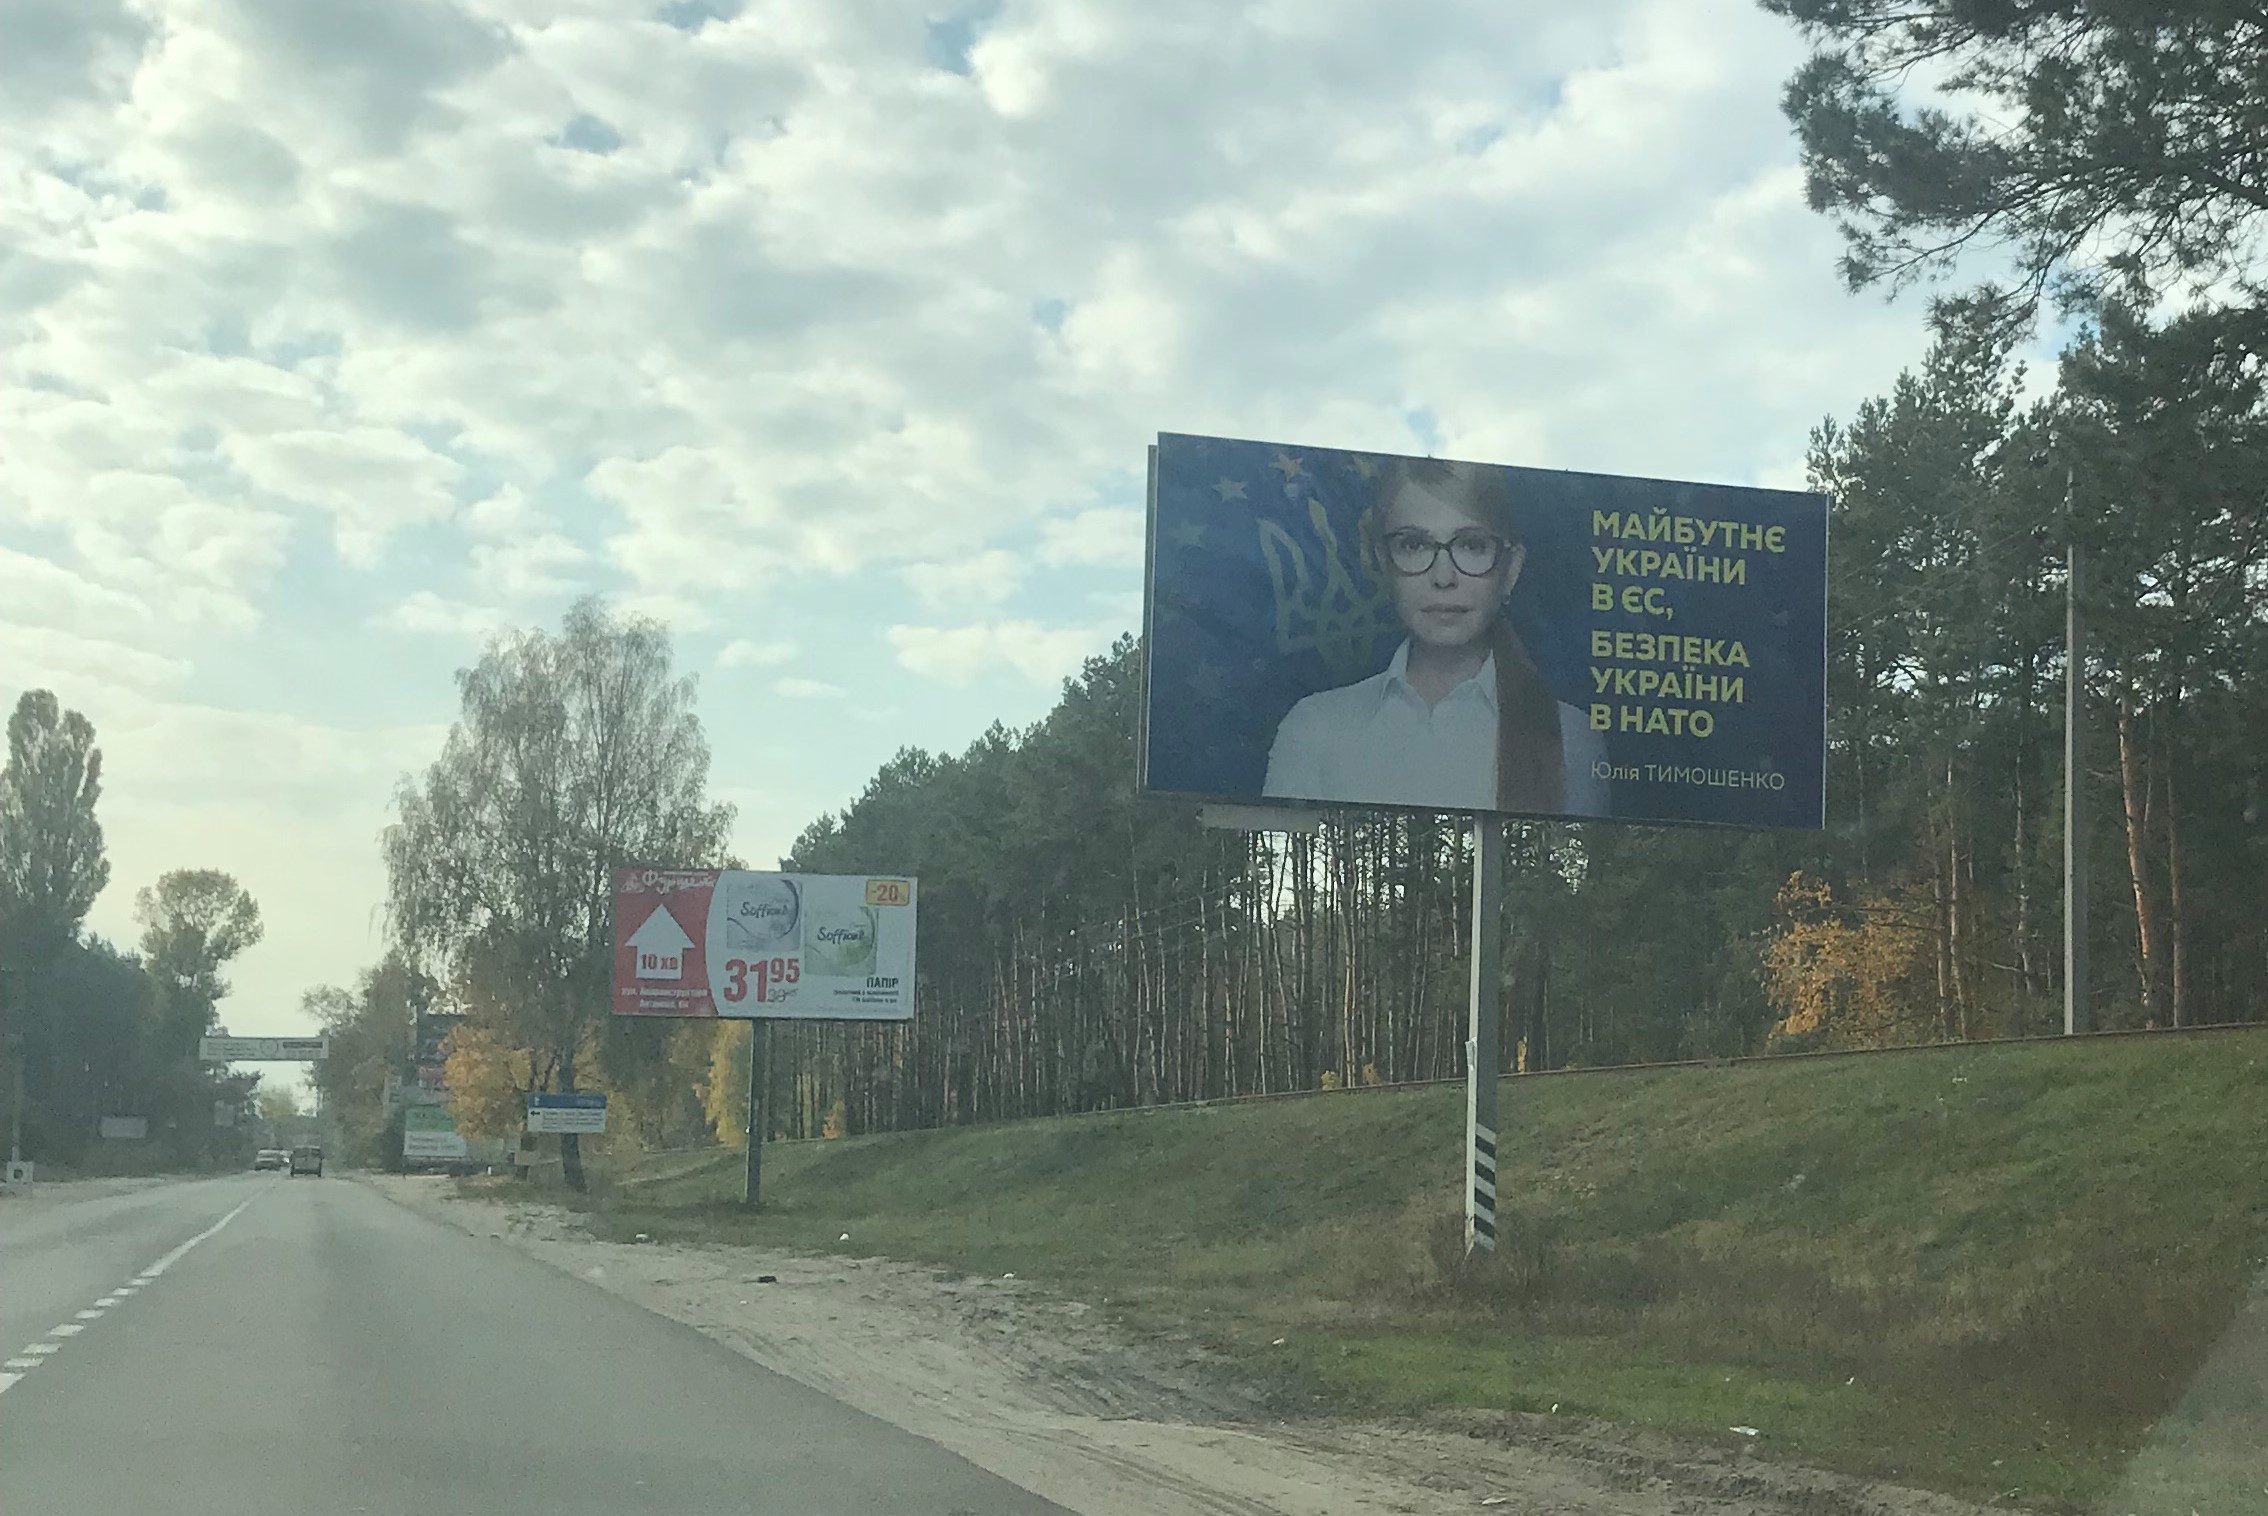 5 11 2018 Kyivobl dochasna agitaciya Tymoshenko.JPG 4